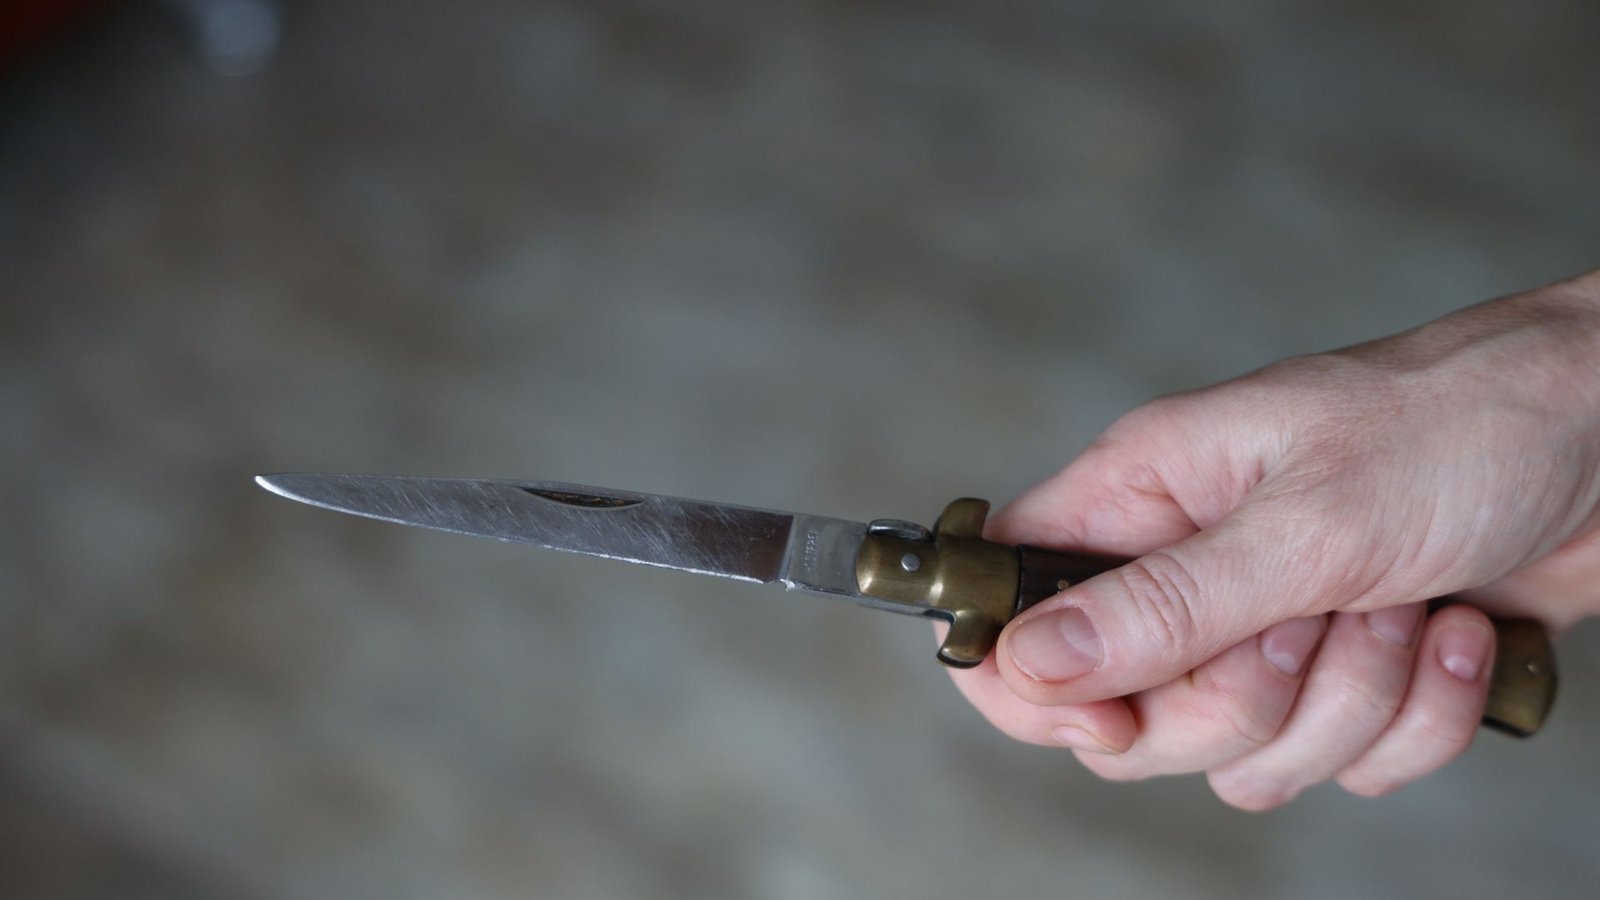 Der Mann soll seinen Kontrahenten mit einem Messer verletzt haben. (Symbolbild)Foto: imago images/SKATA/via www.imago-images.de